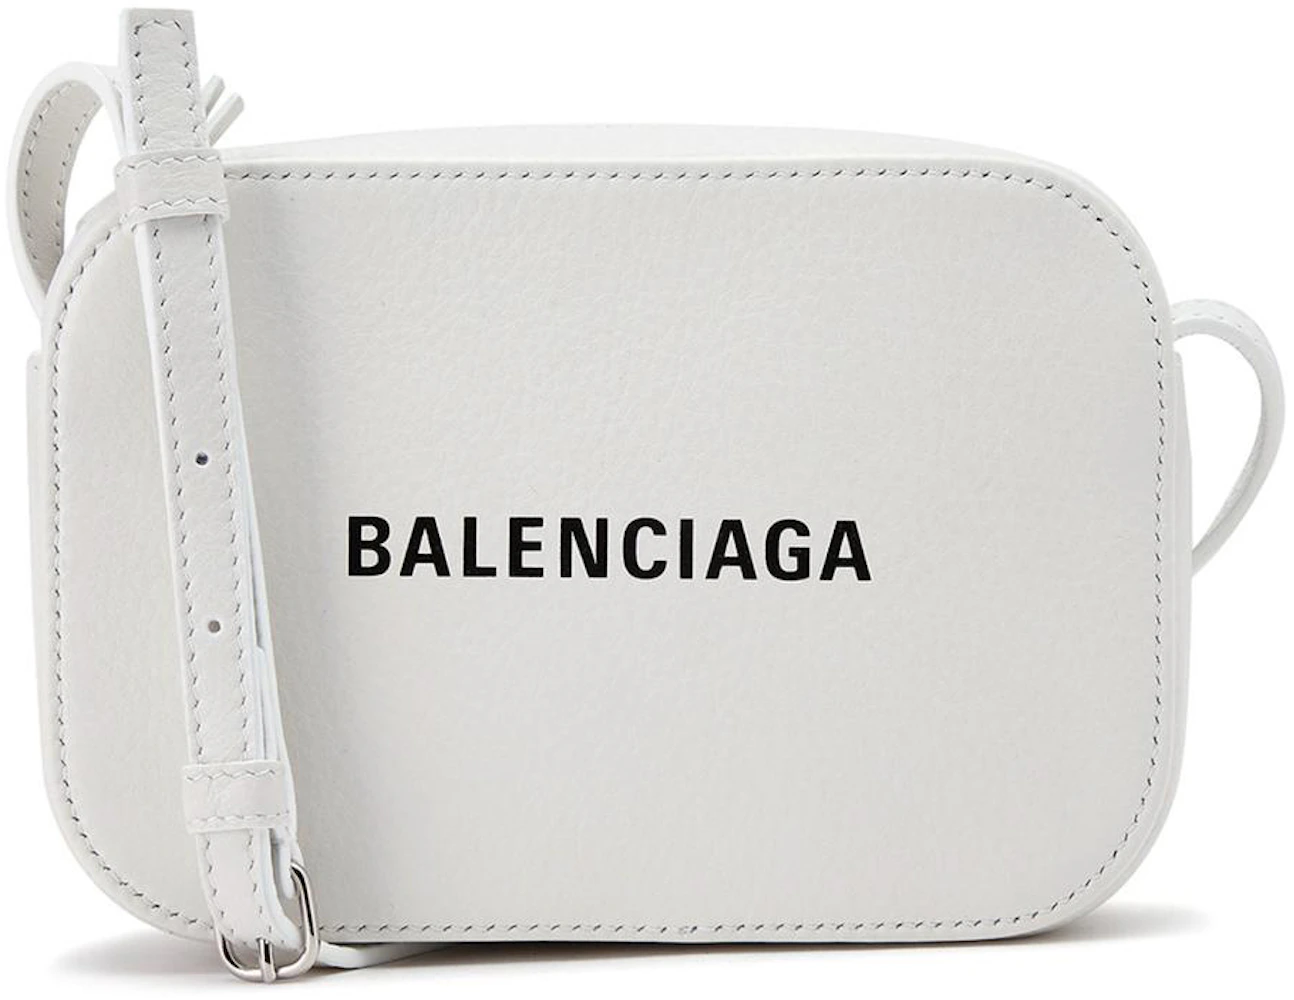 Balenciaga Bags in Whites and Creams